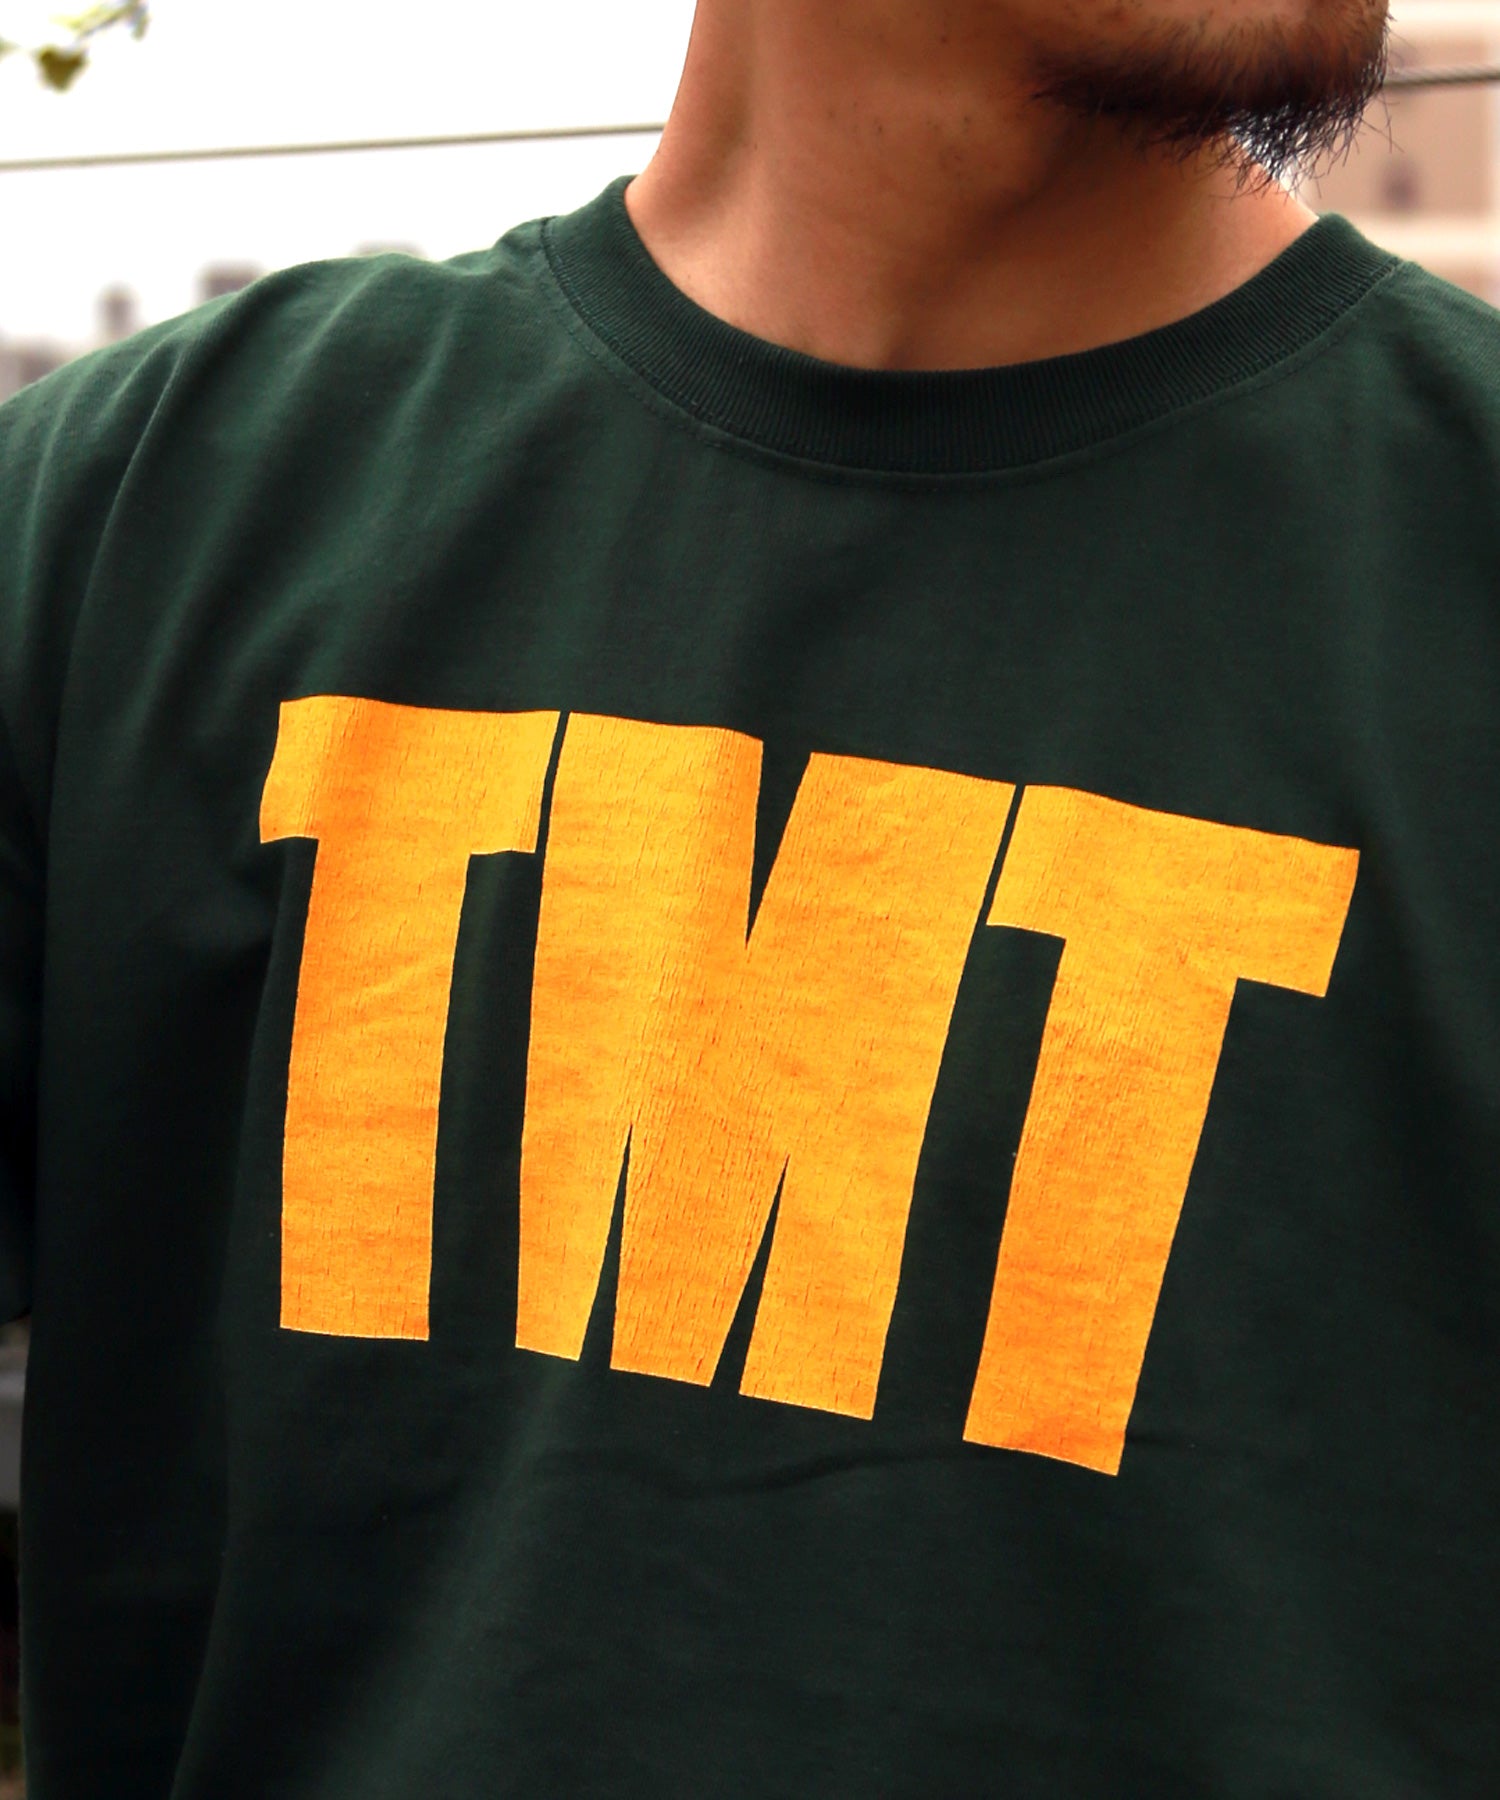 TMT パーカー。TMT Tシャツ。